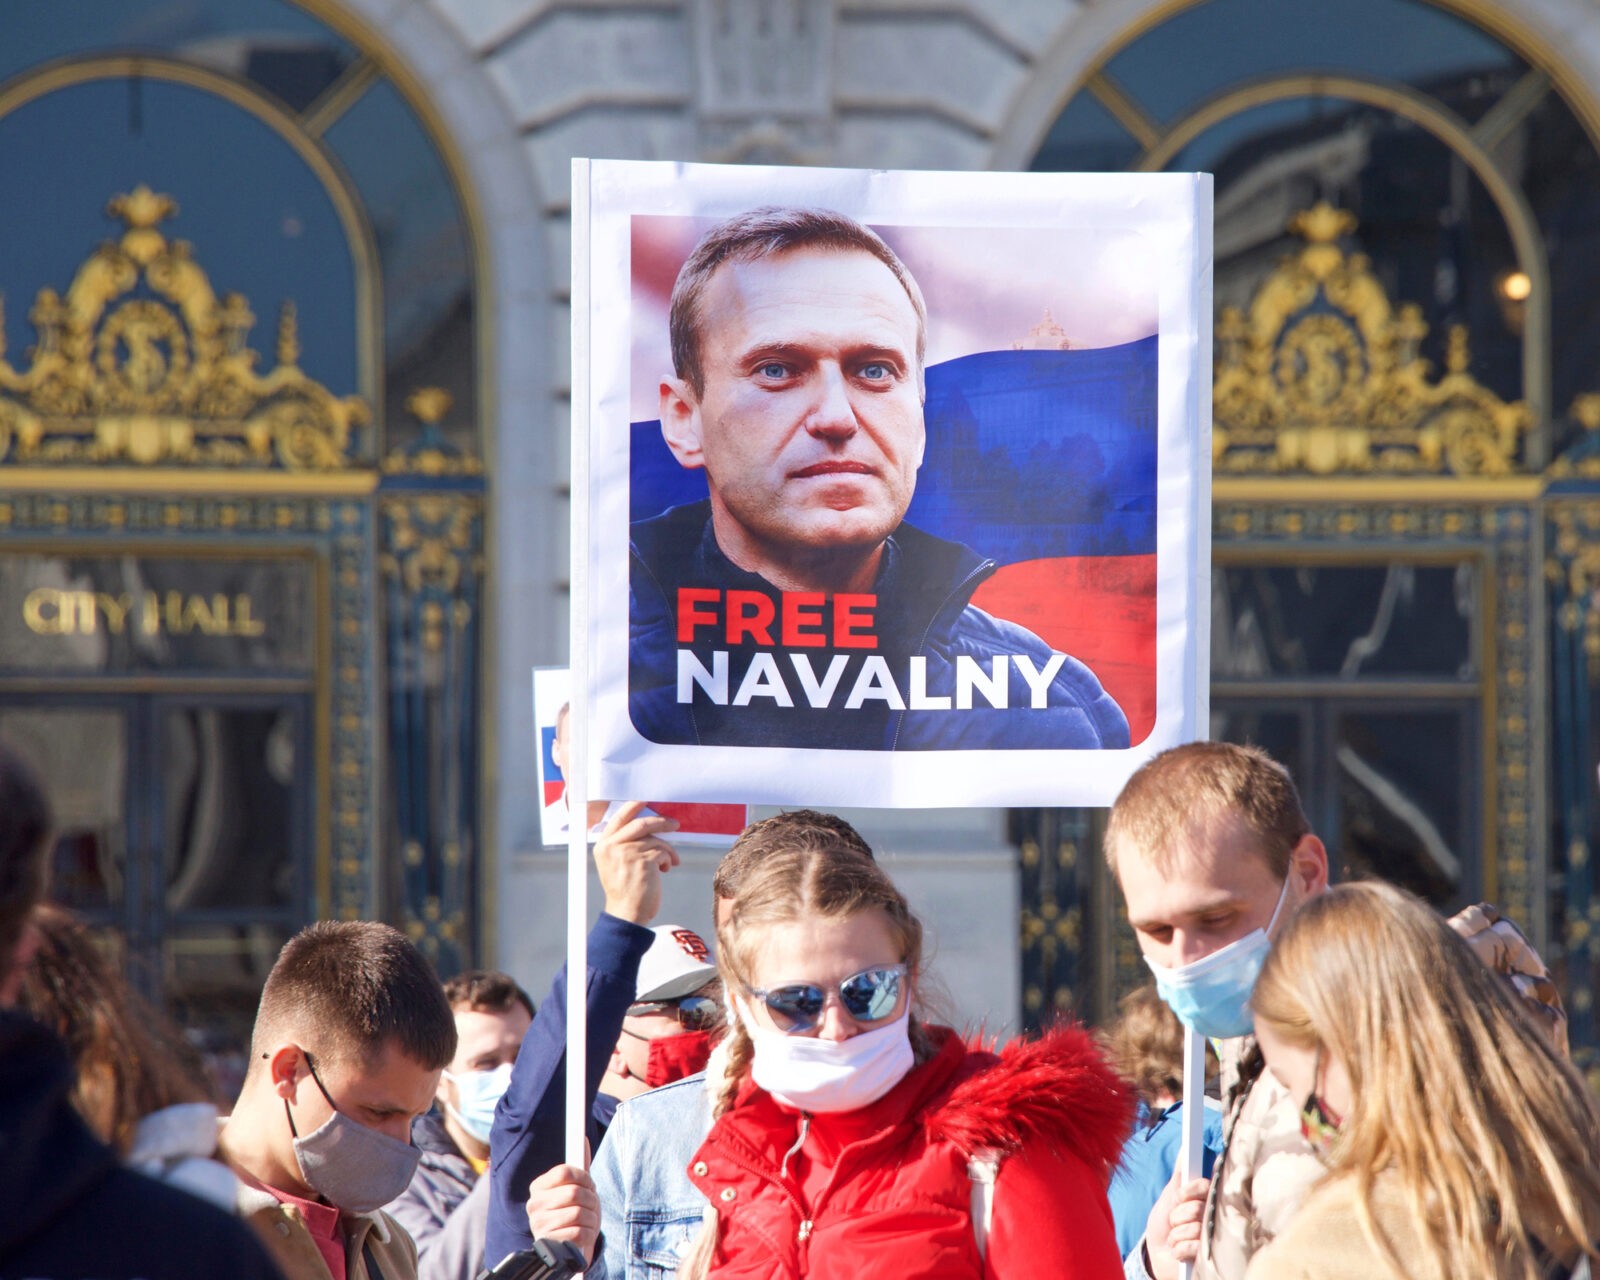 Aleksey Navalni